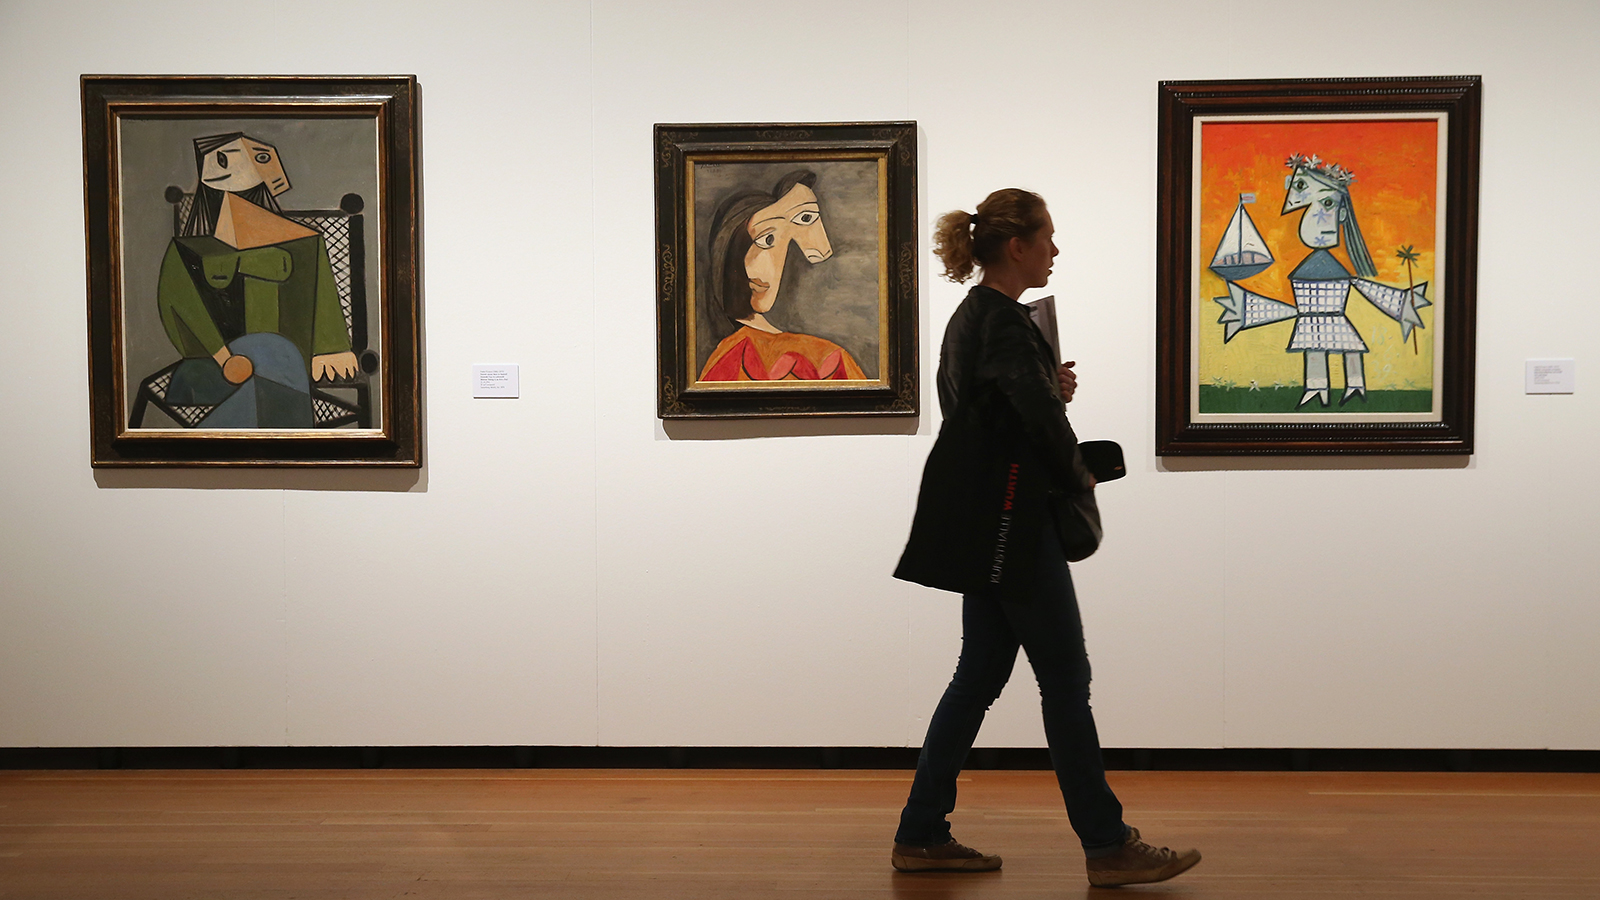 ピカソの絵画の“市場価値”が下落しはじめている　没後50年で注目されるはずが